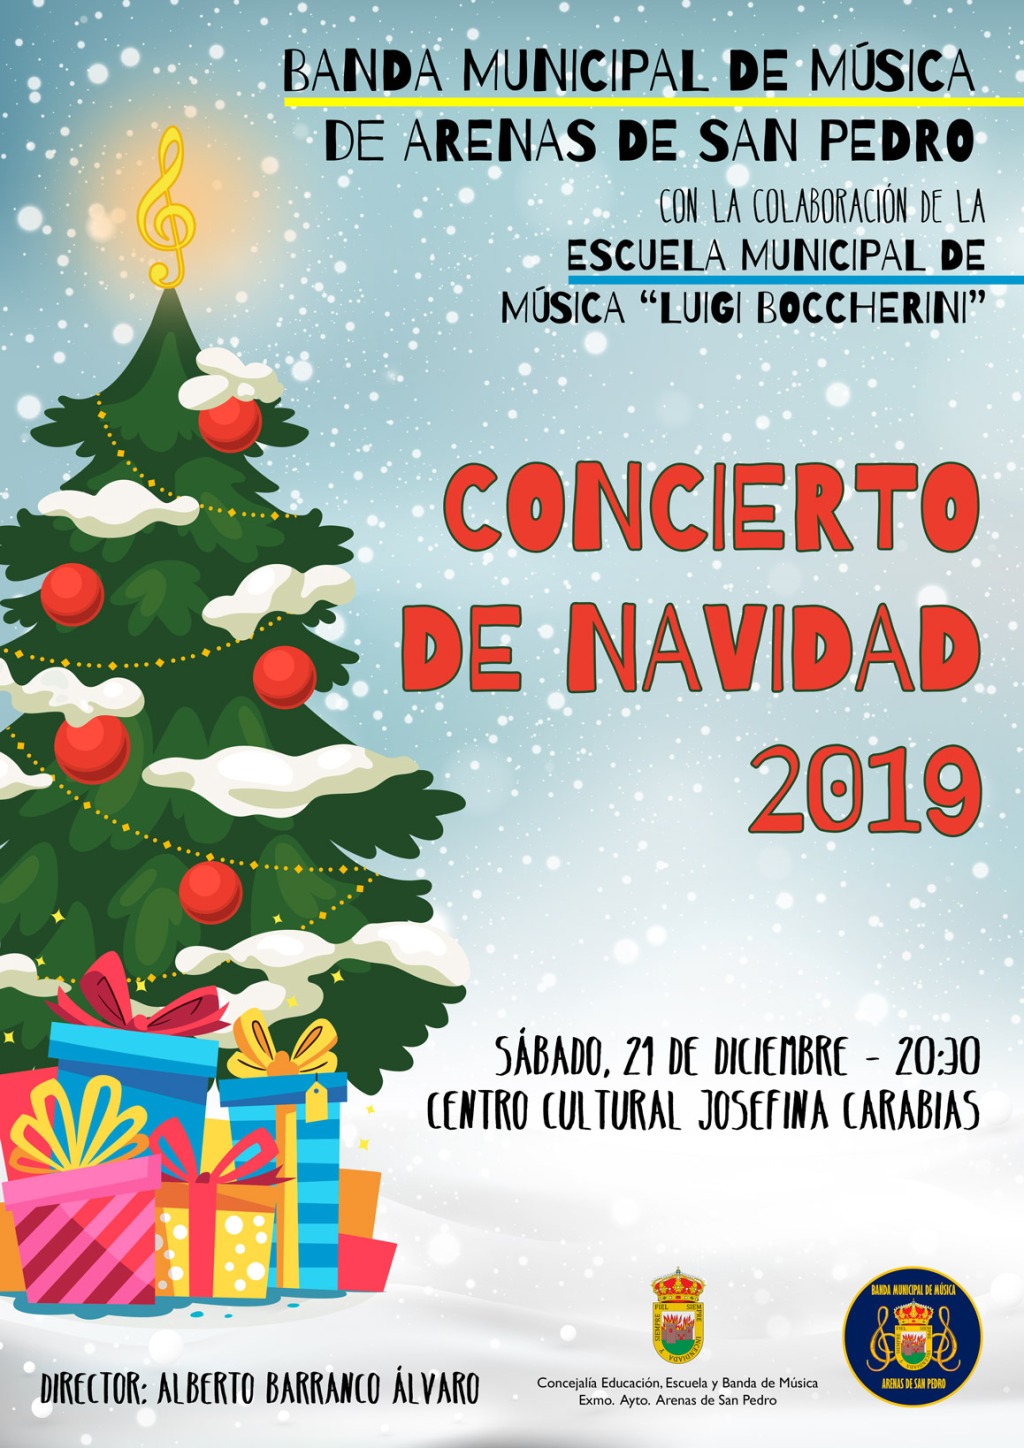 21 Dic: Concierto de Navidad 2019 de la Banda Municipal de Música de #ArenasDeSanPedro